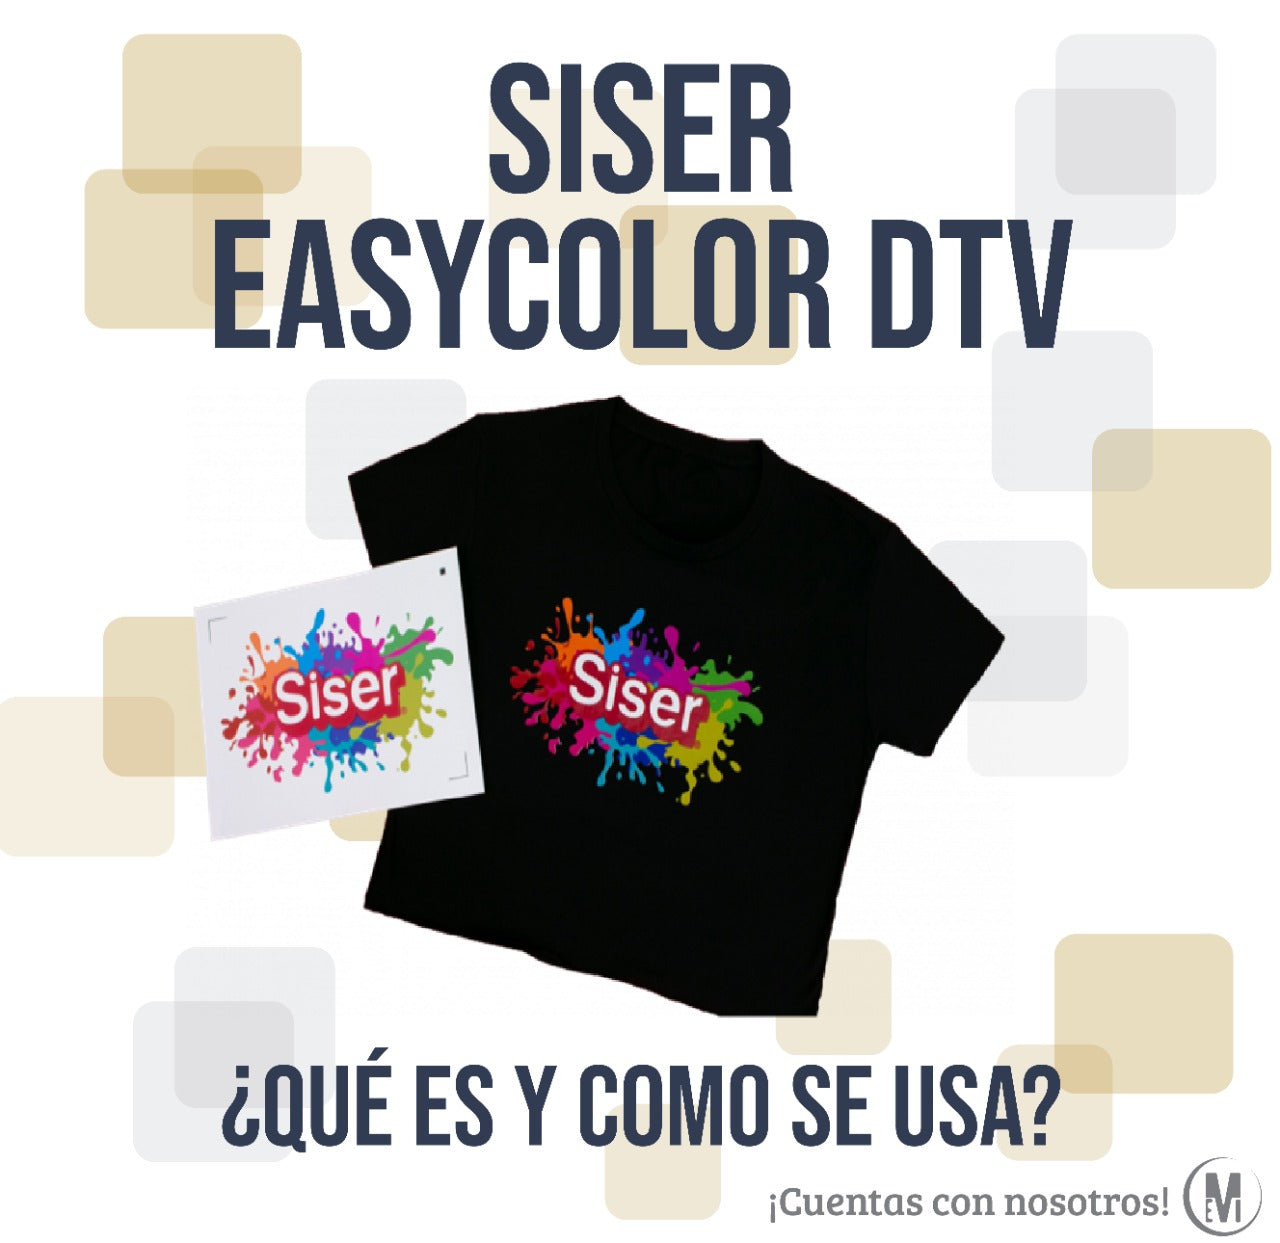 Nuevo papel para tela oscura: Siser Easycolor DTV